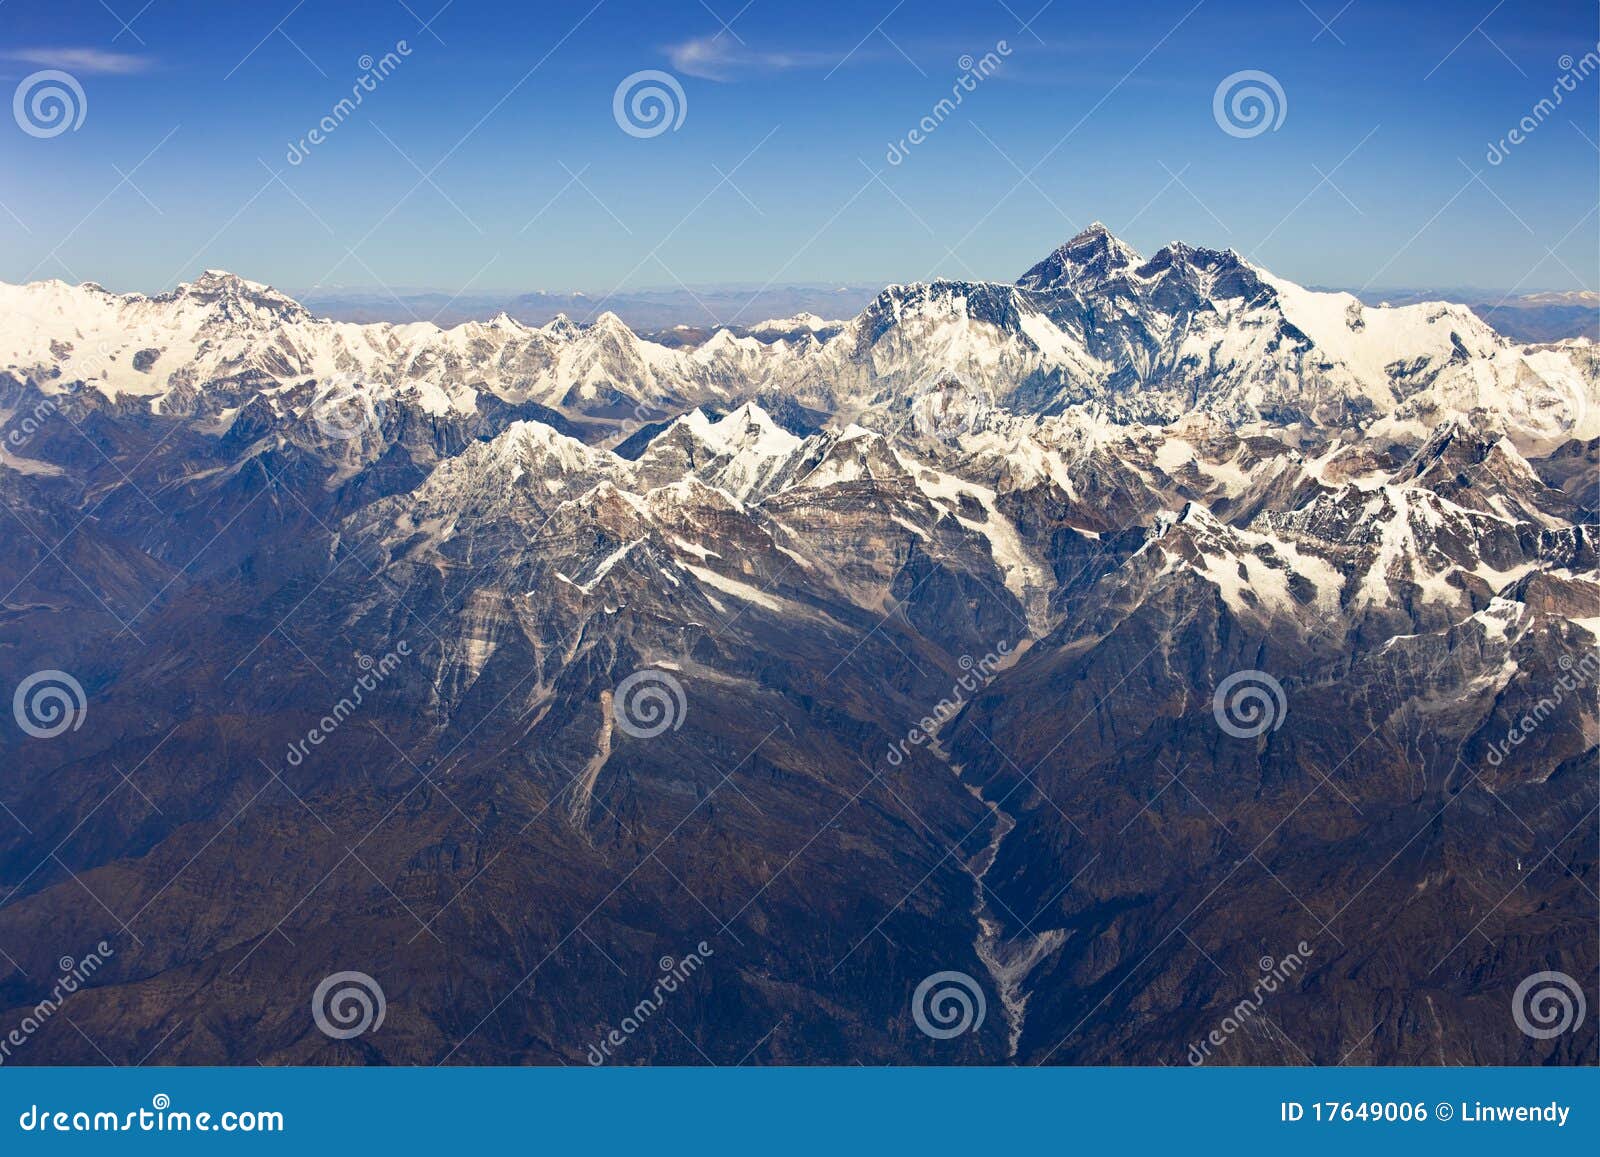 himalaya mountain- nepal